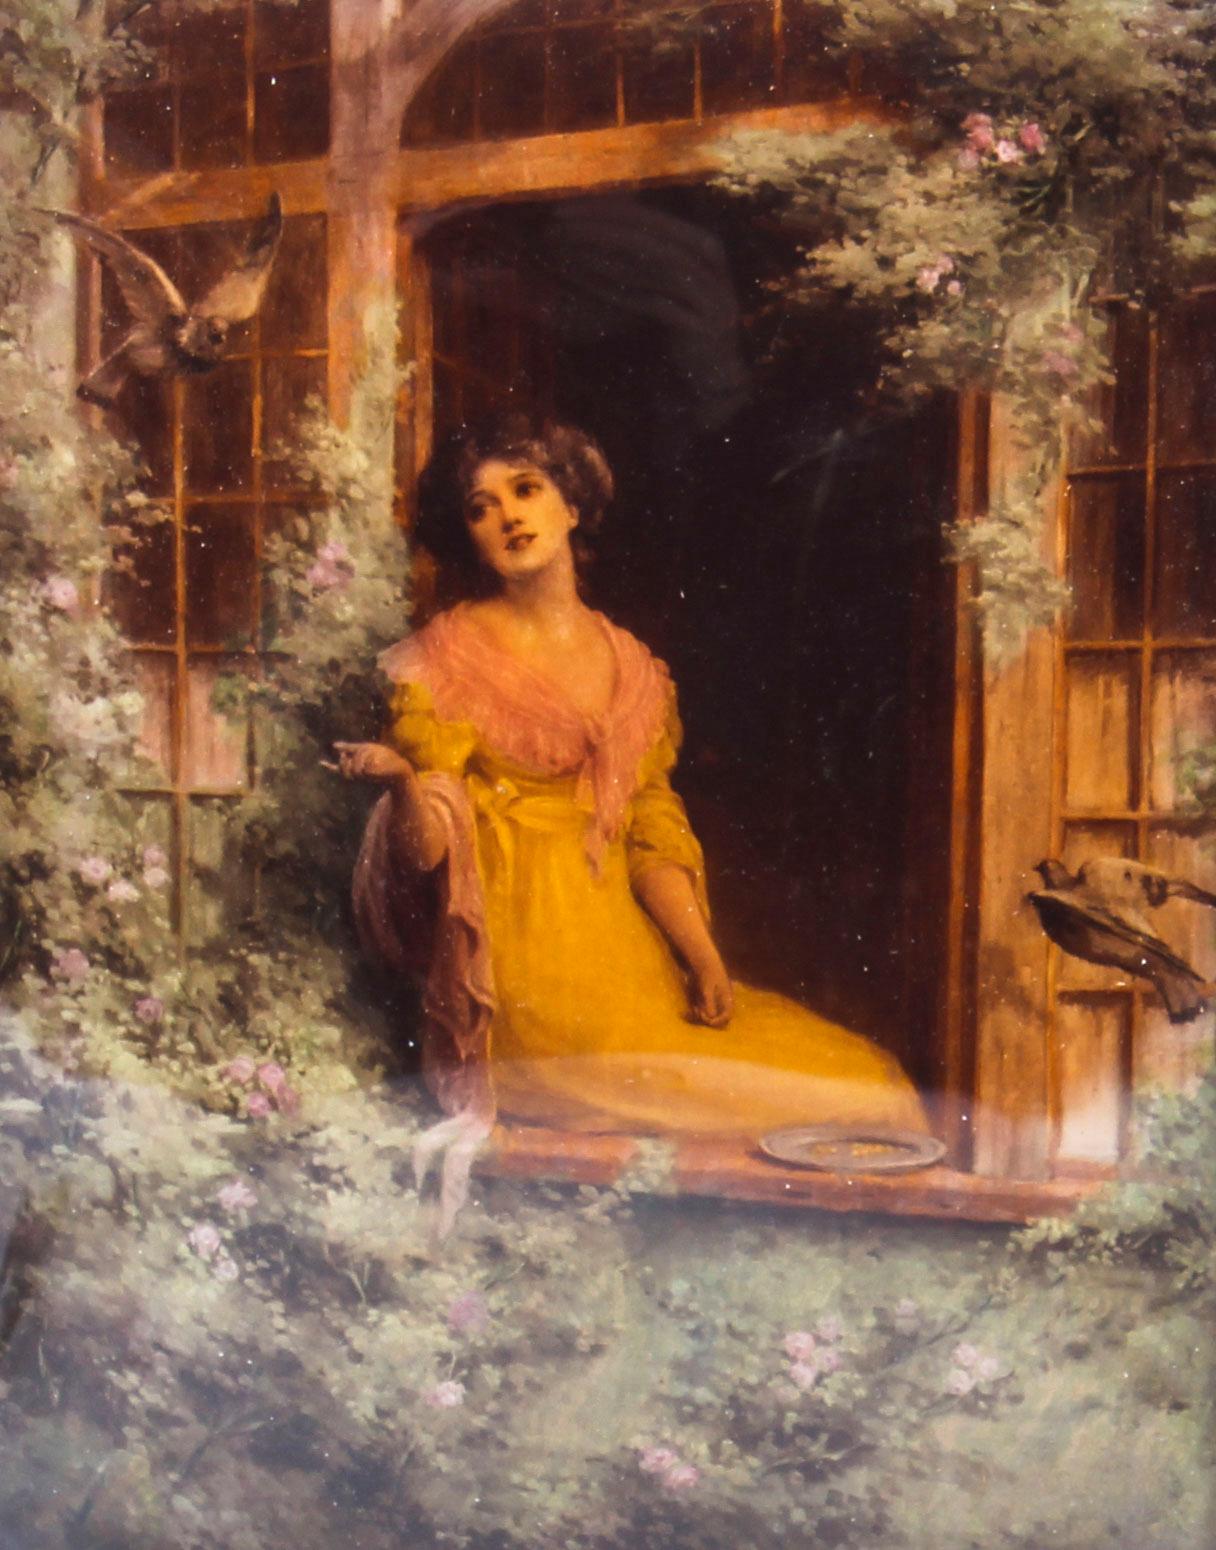 Il s'agit d'une charmante gravure victorienne ancienne en crystoleum sur verre concave, datant d'environ 1890.
 
Elle représente une jeune femme habillée en costume de l'époque géorgienne, assise sur le rebord de la fenêtre d'une grande maison de